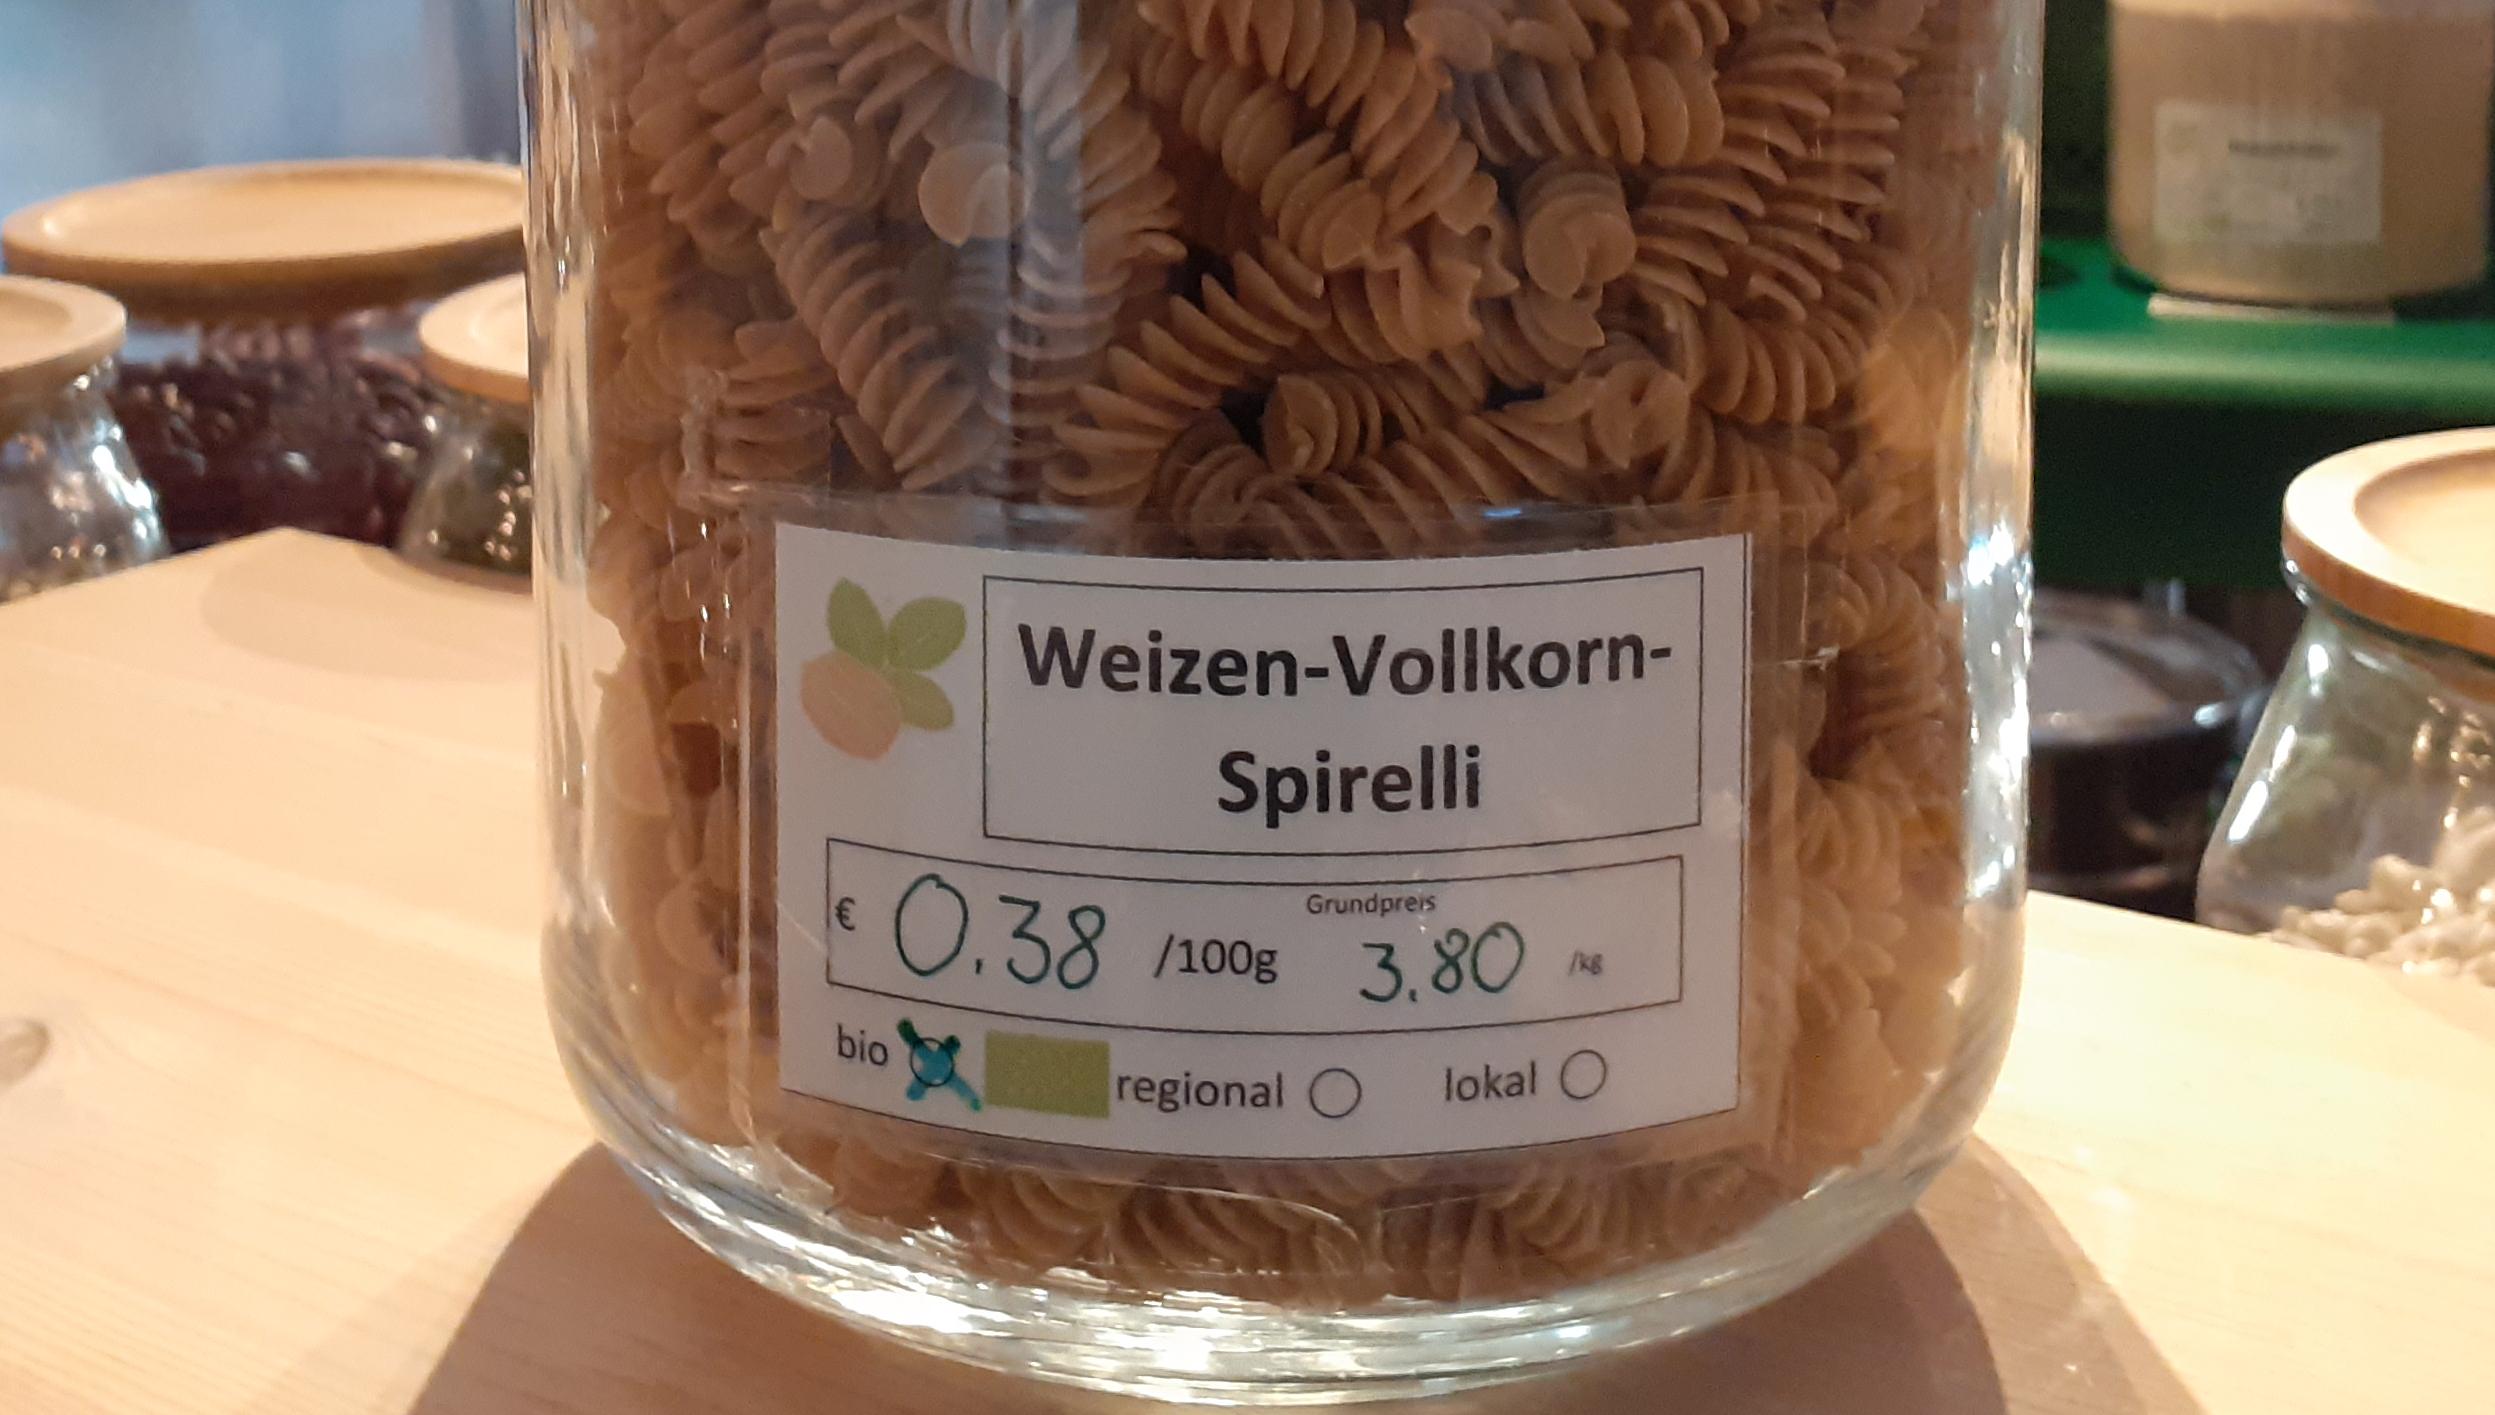 Weizen-Vollkorn-Spirelli